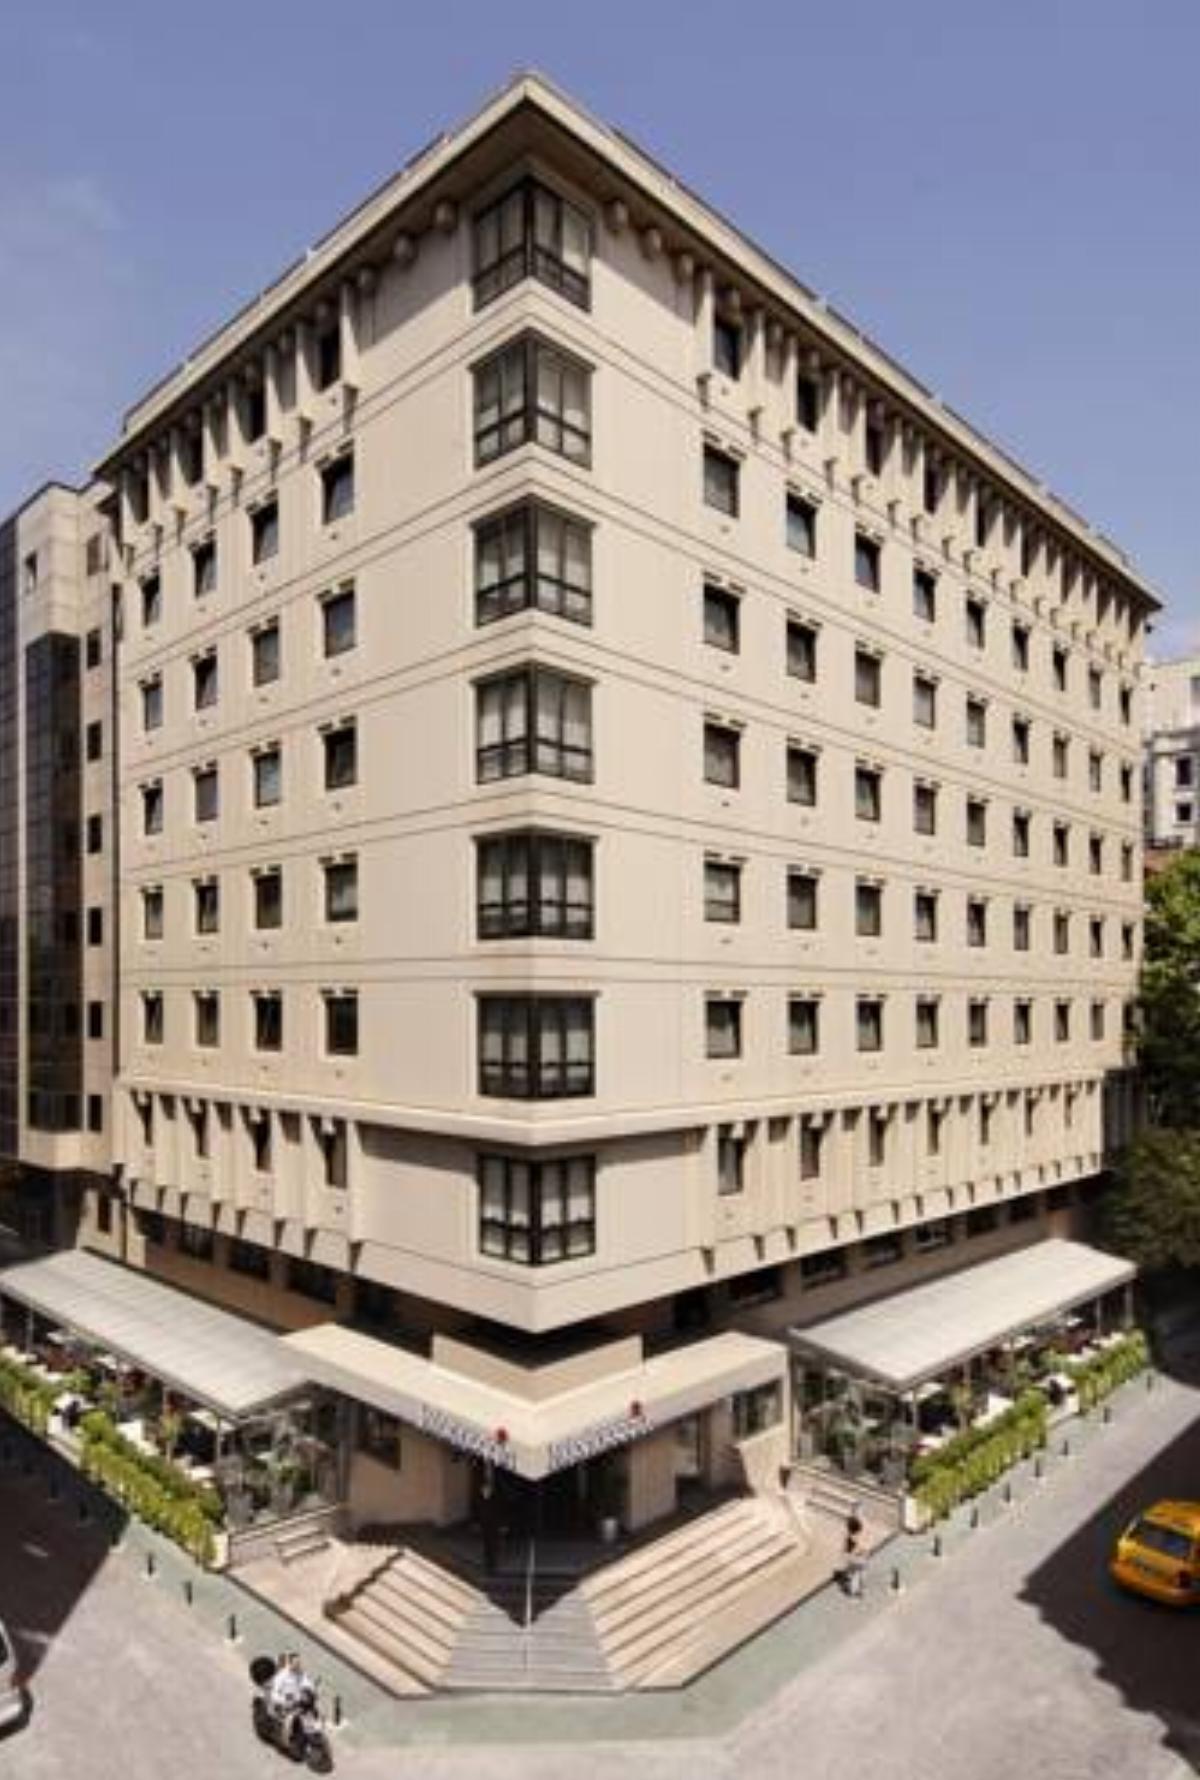 Nippon Hotel Hotel İstanbul Turkey